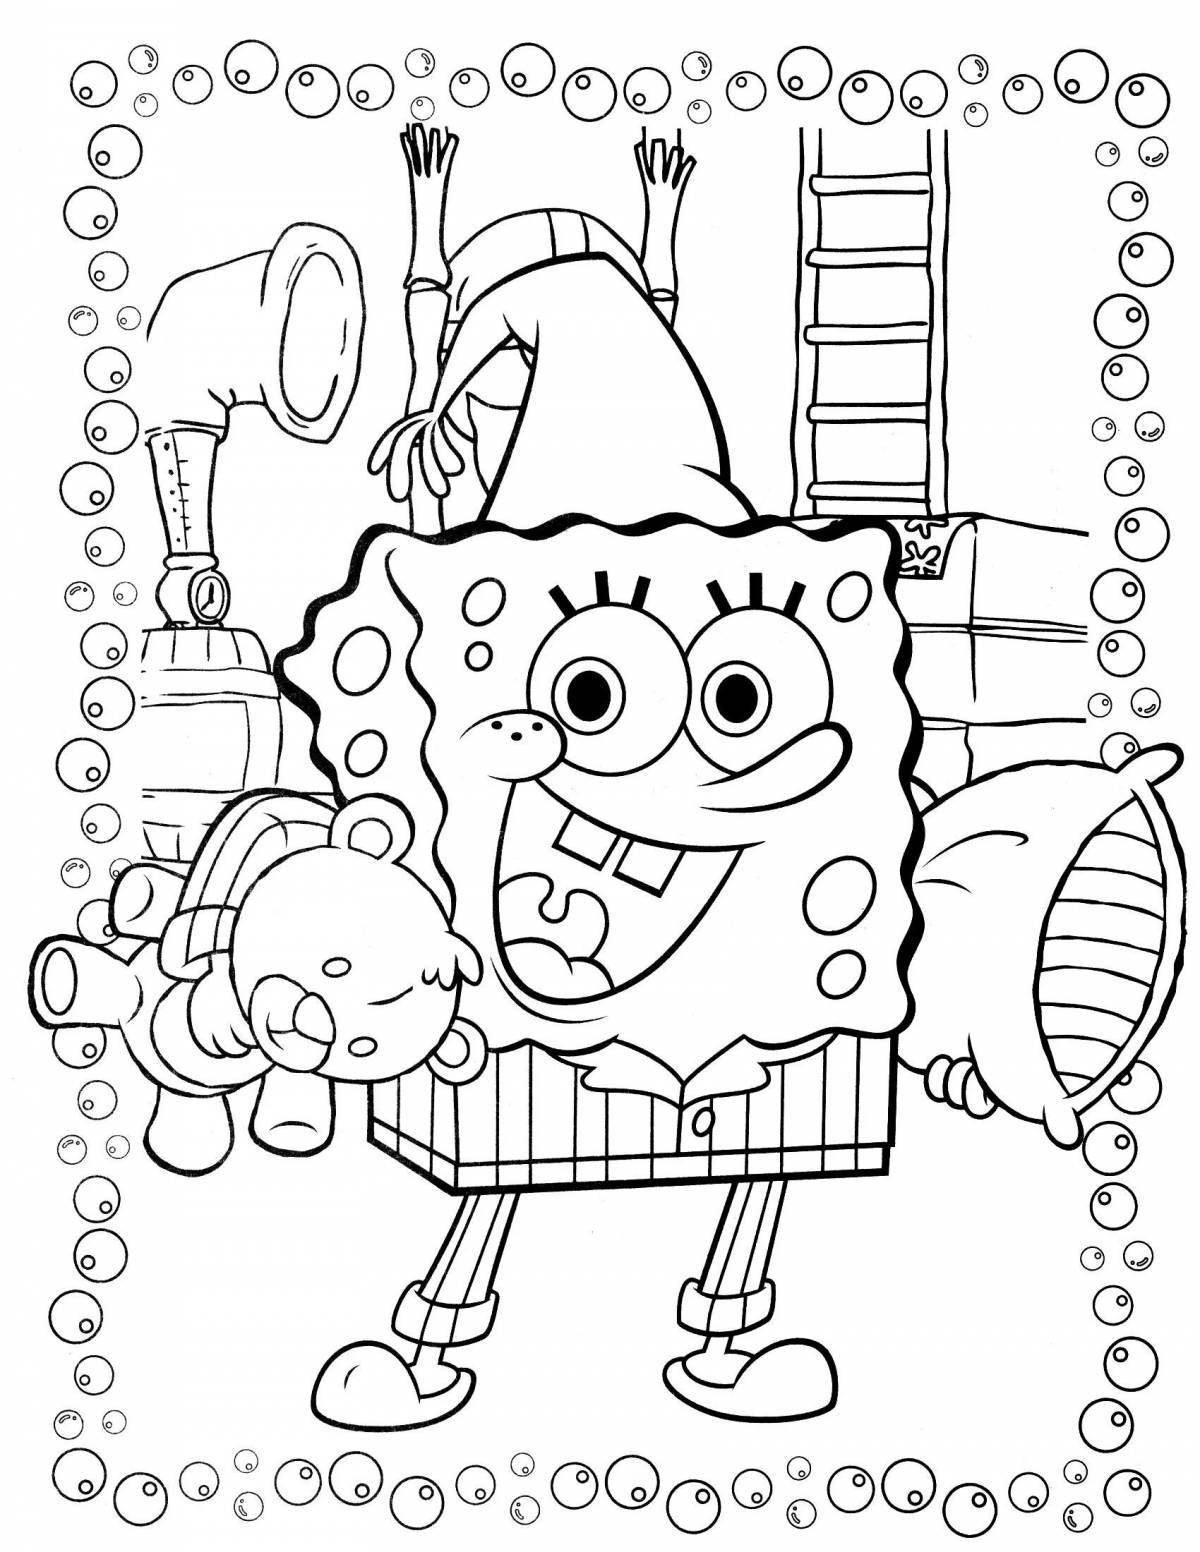 Fun coloring spongebob print